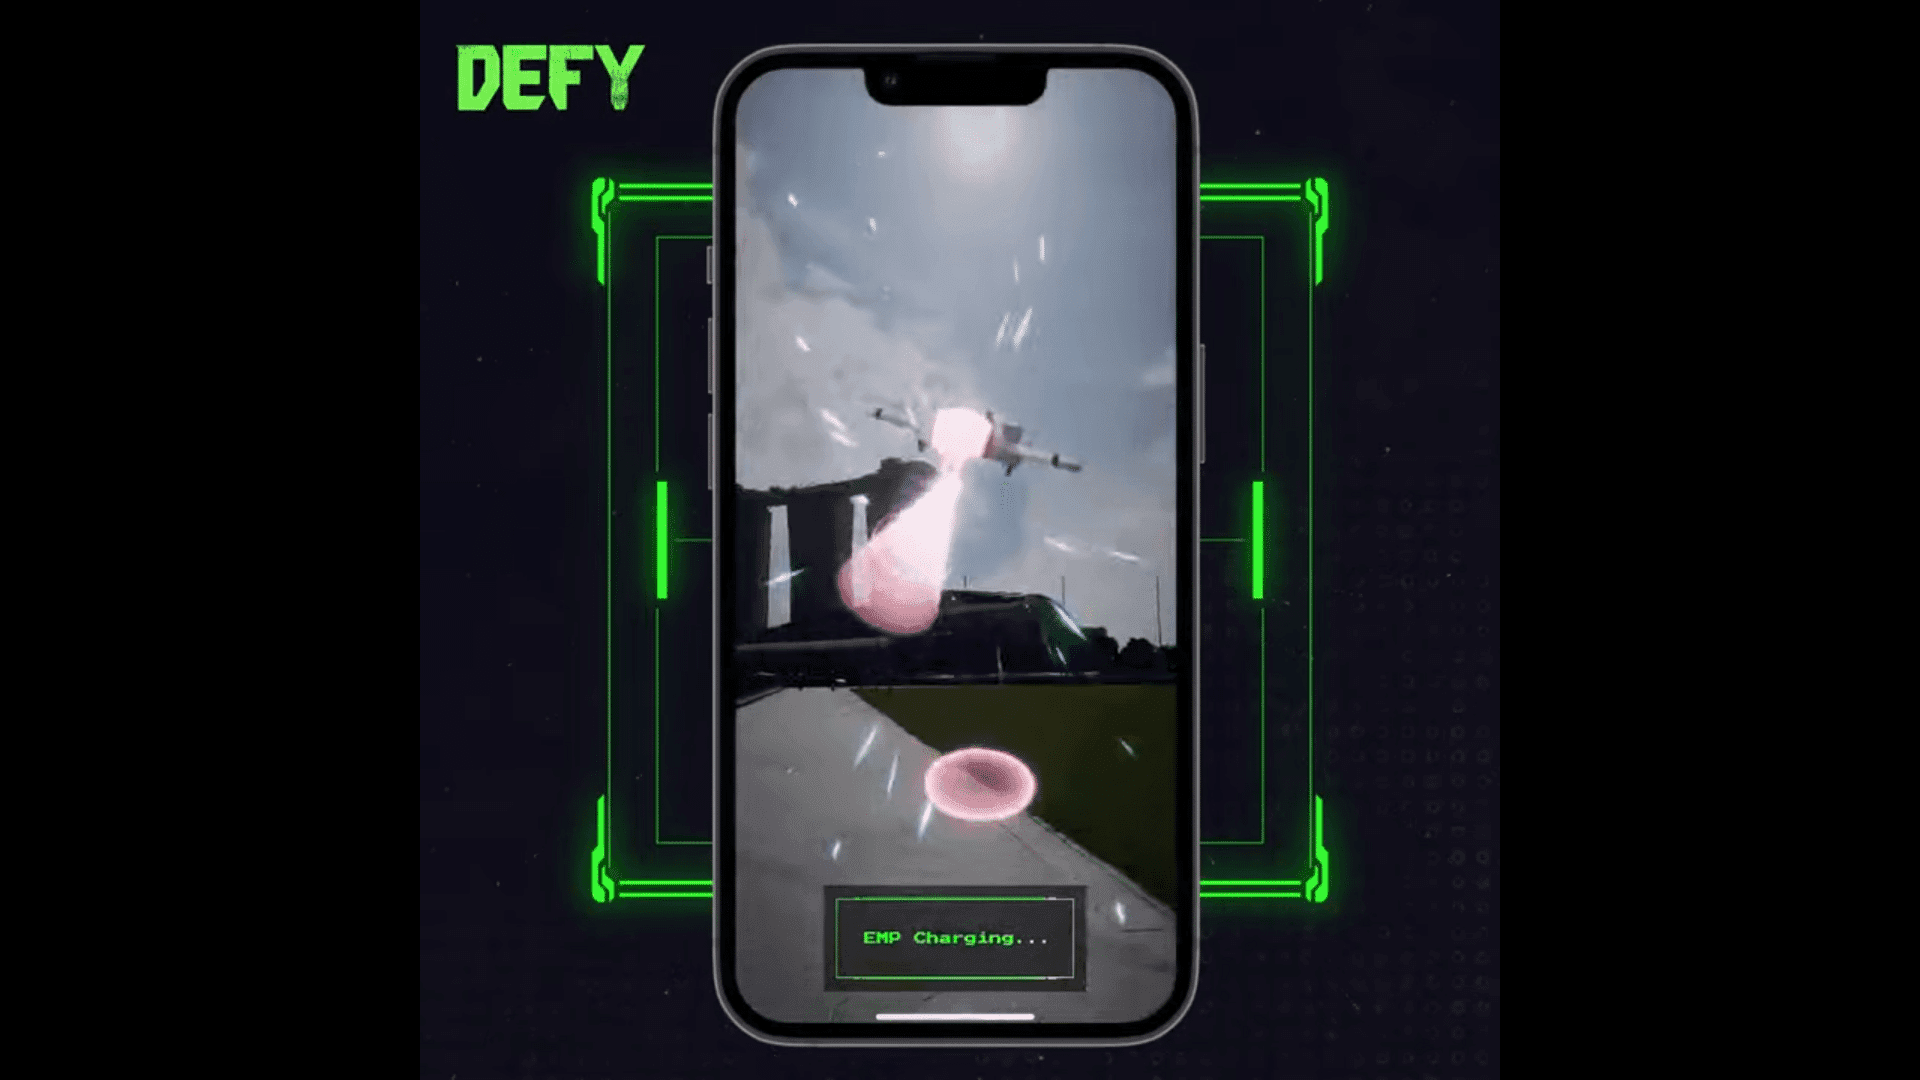 DEFY, sürükleyici bir metaverse deneyimi sağlamak için sanal ve fiziksel dünyaların unsurlarını birleştiren, kazanmaya yönelik bir mobil oyundur.